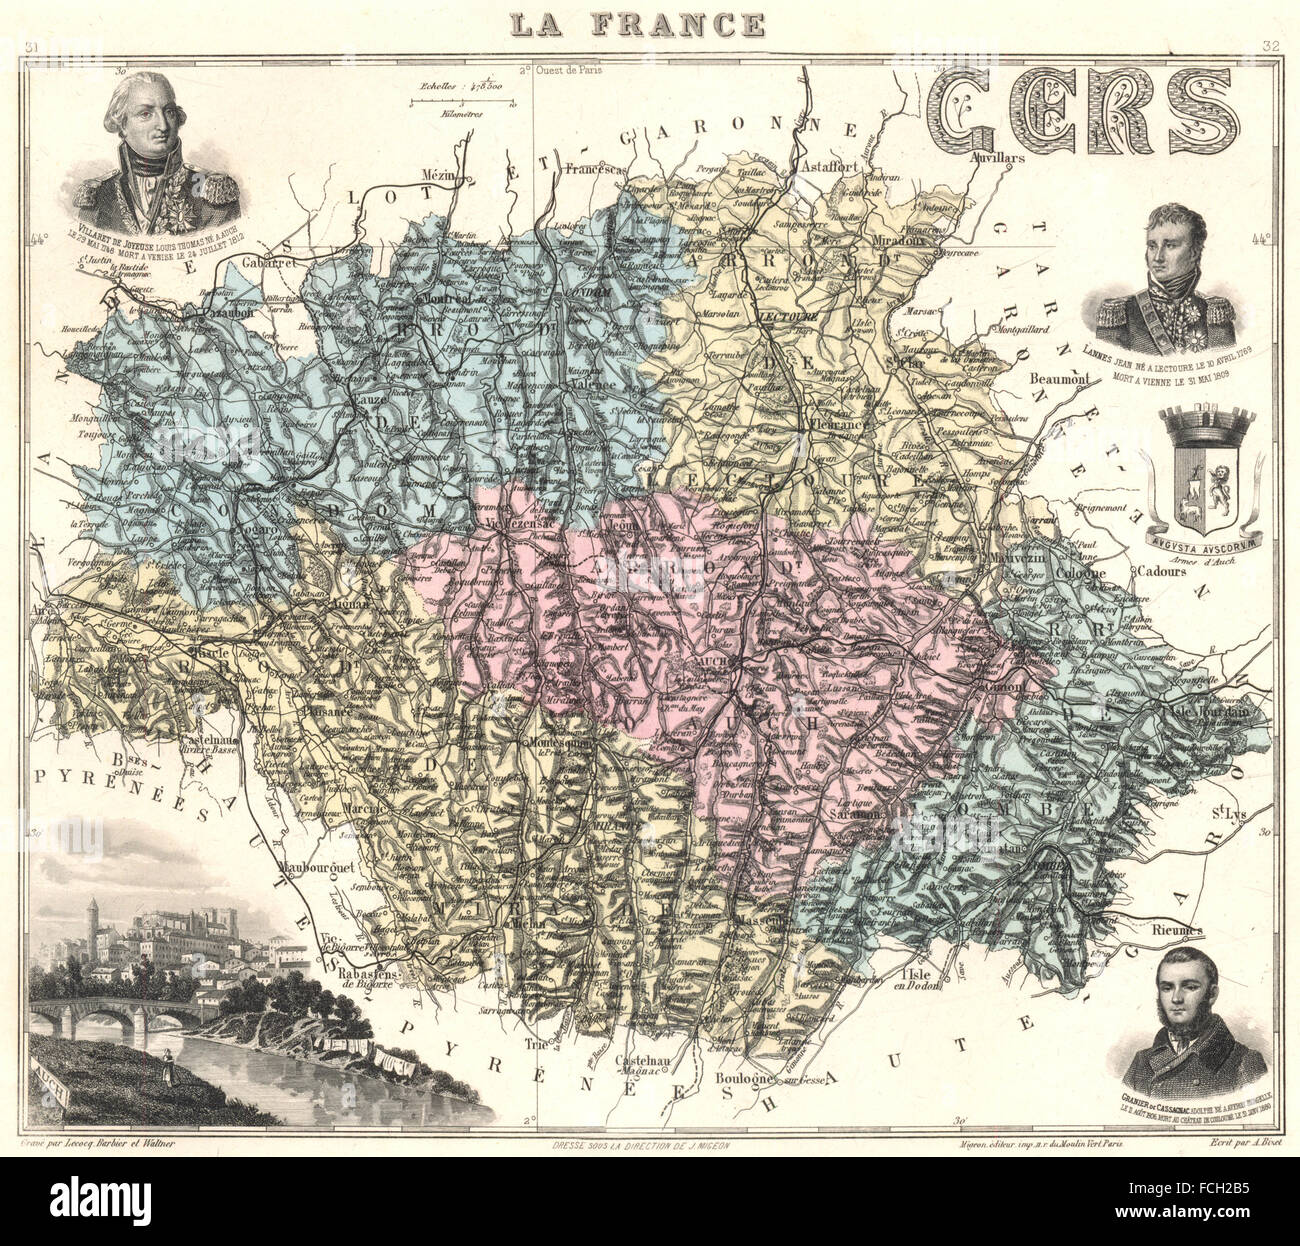 GERS: Gers Département. Auch Vignette. Vuillemin, 1903 Antike Landkarte Stockfoto